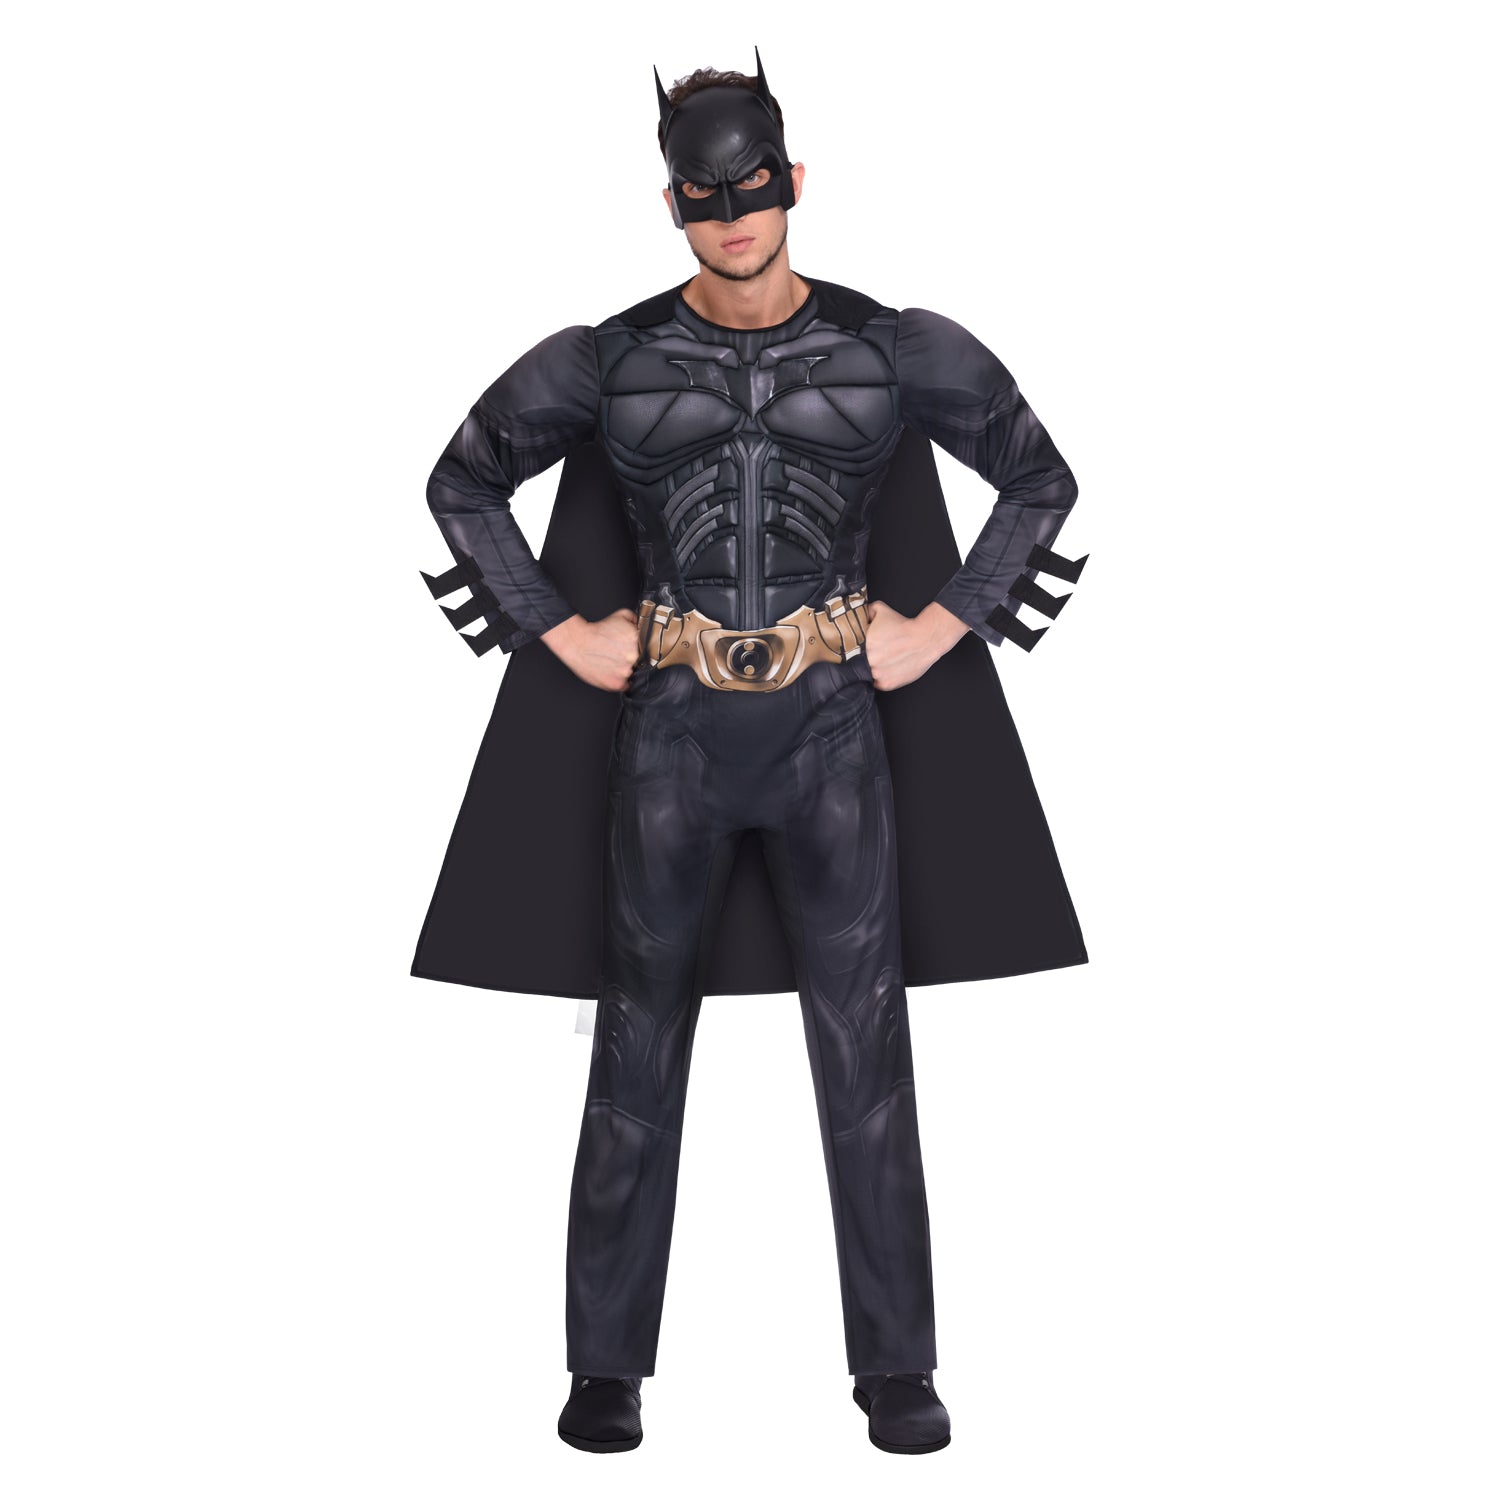 Adult's Batman: The Dark Knight Costume